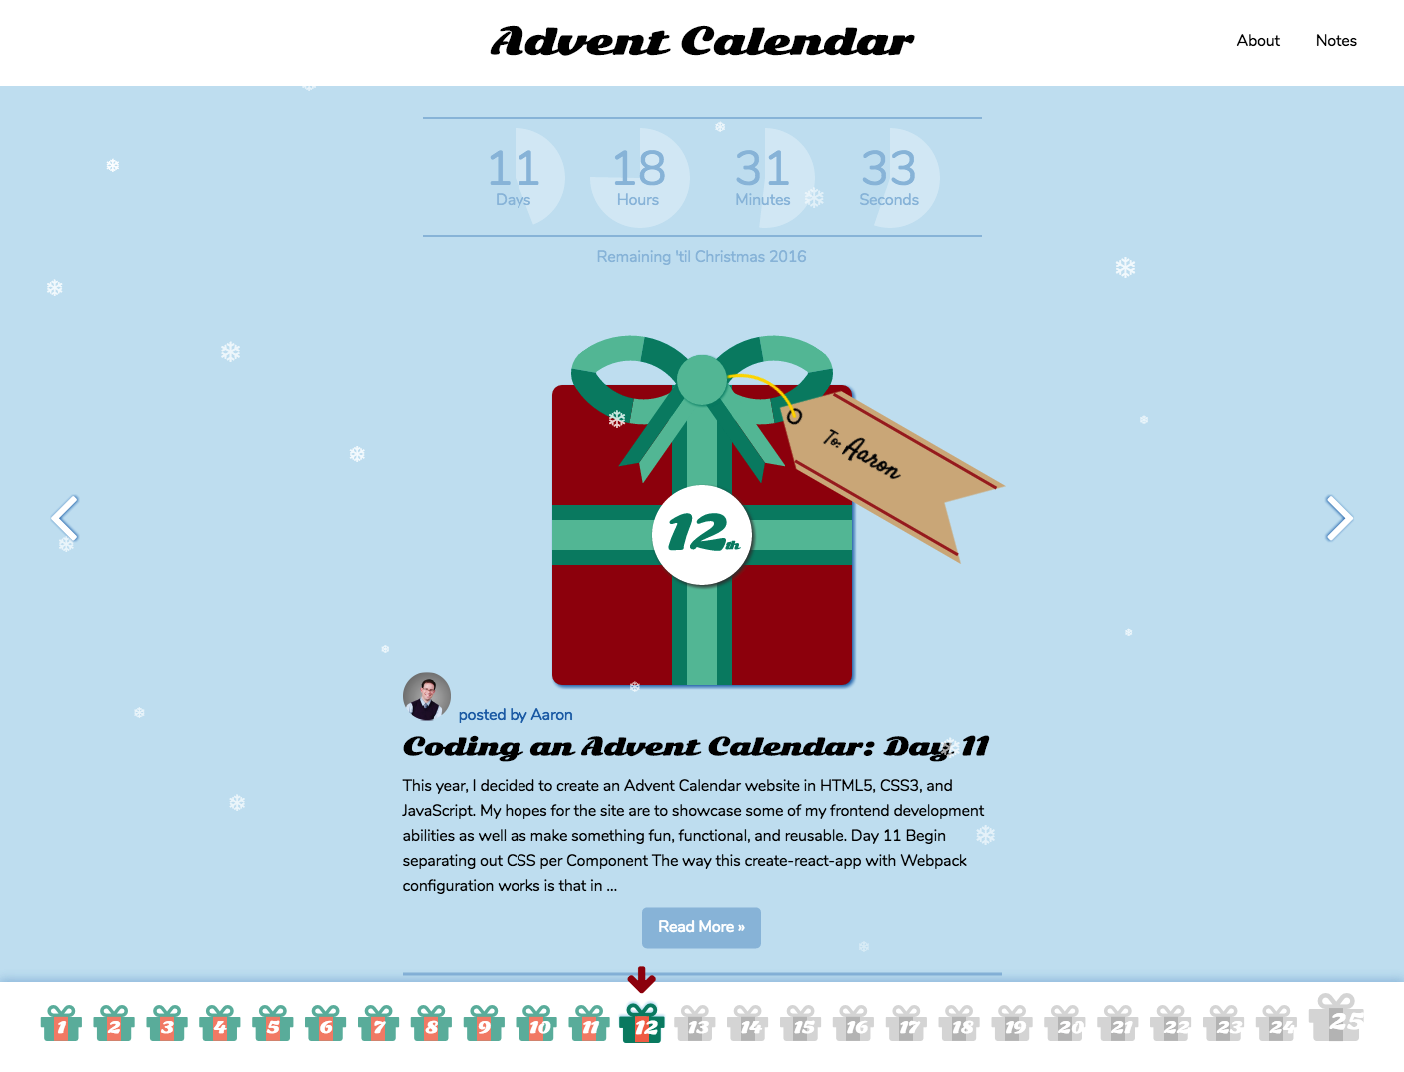 Coding an Advent Calendar Day 12 Aaron